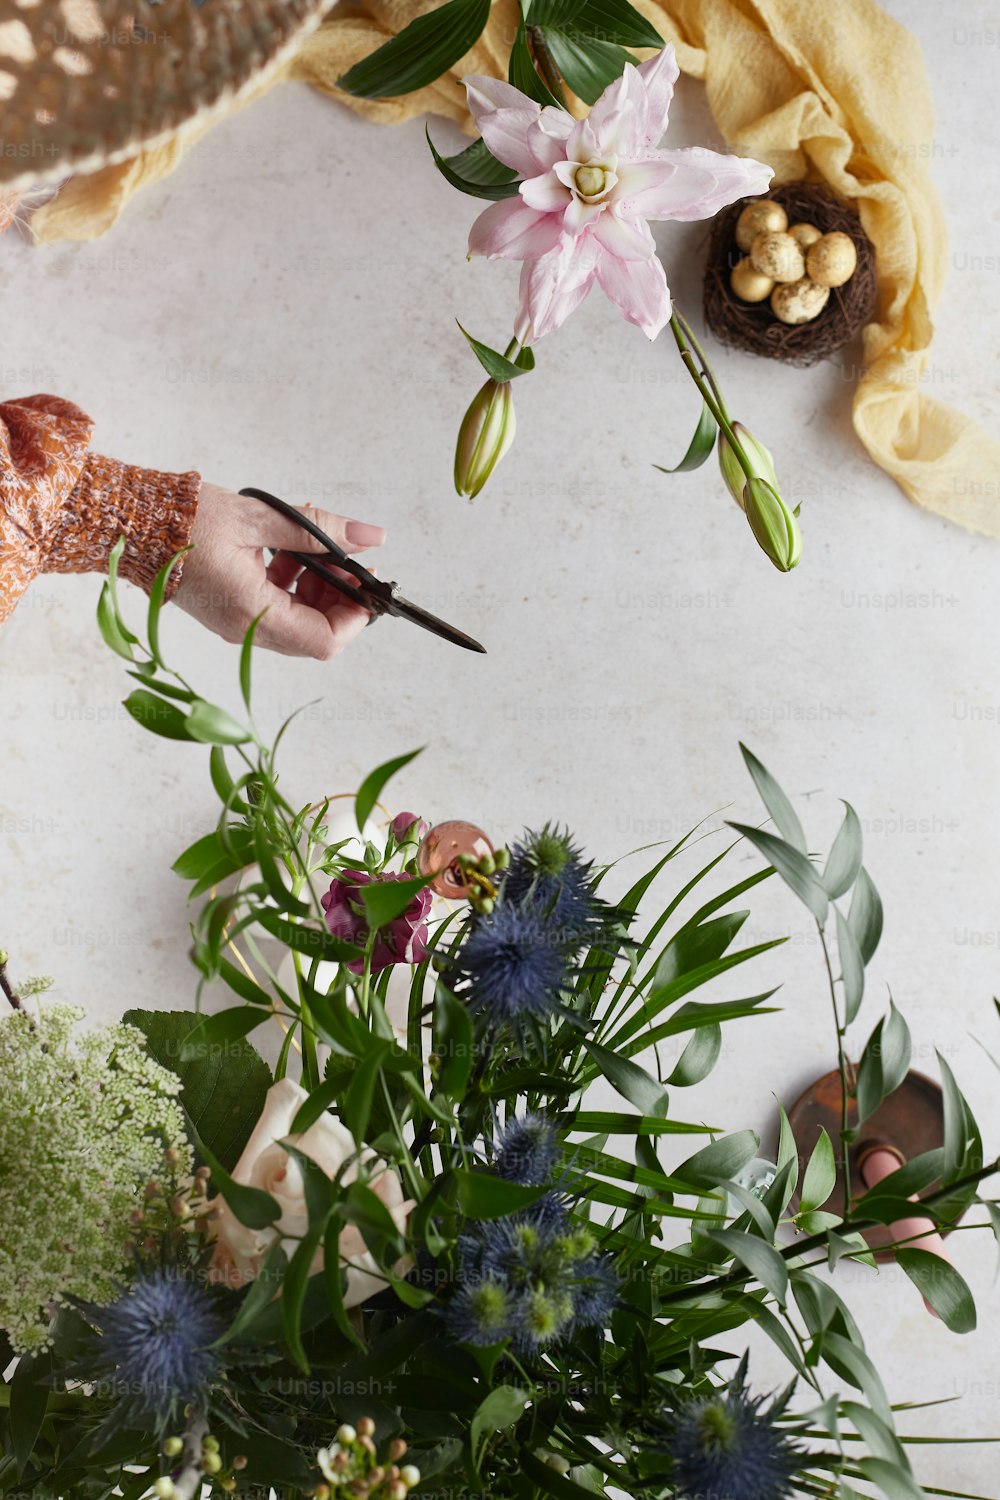 Eine Person, die Blumen mit einer Schere auf einem Tisch schneidet